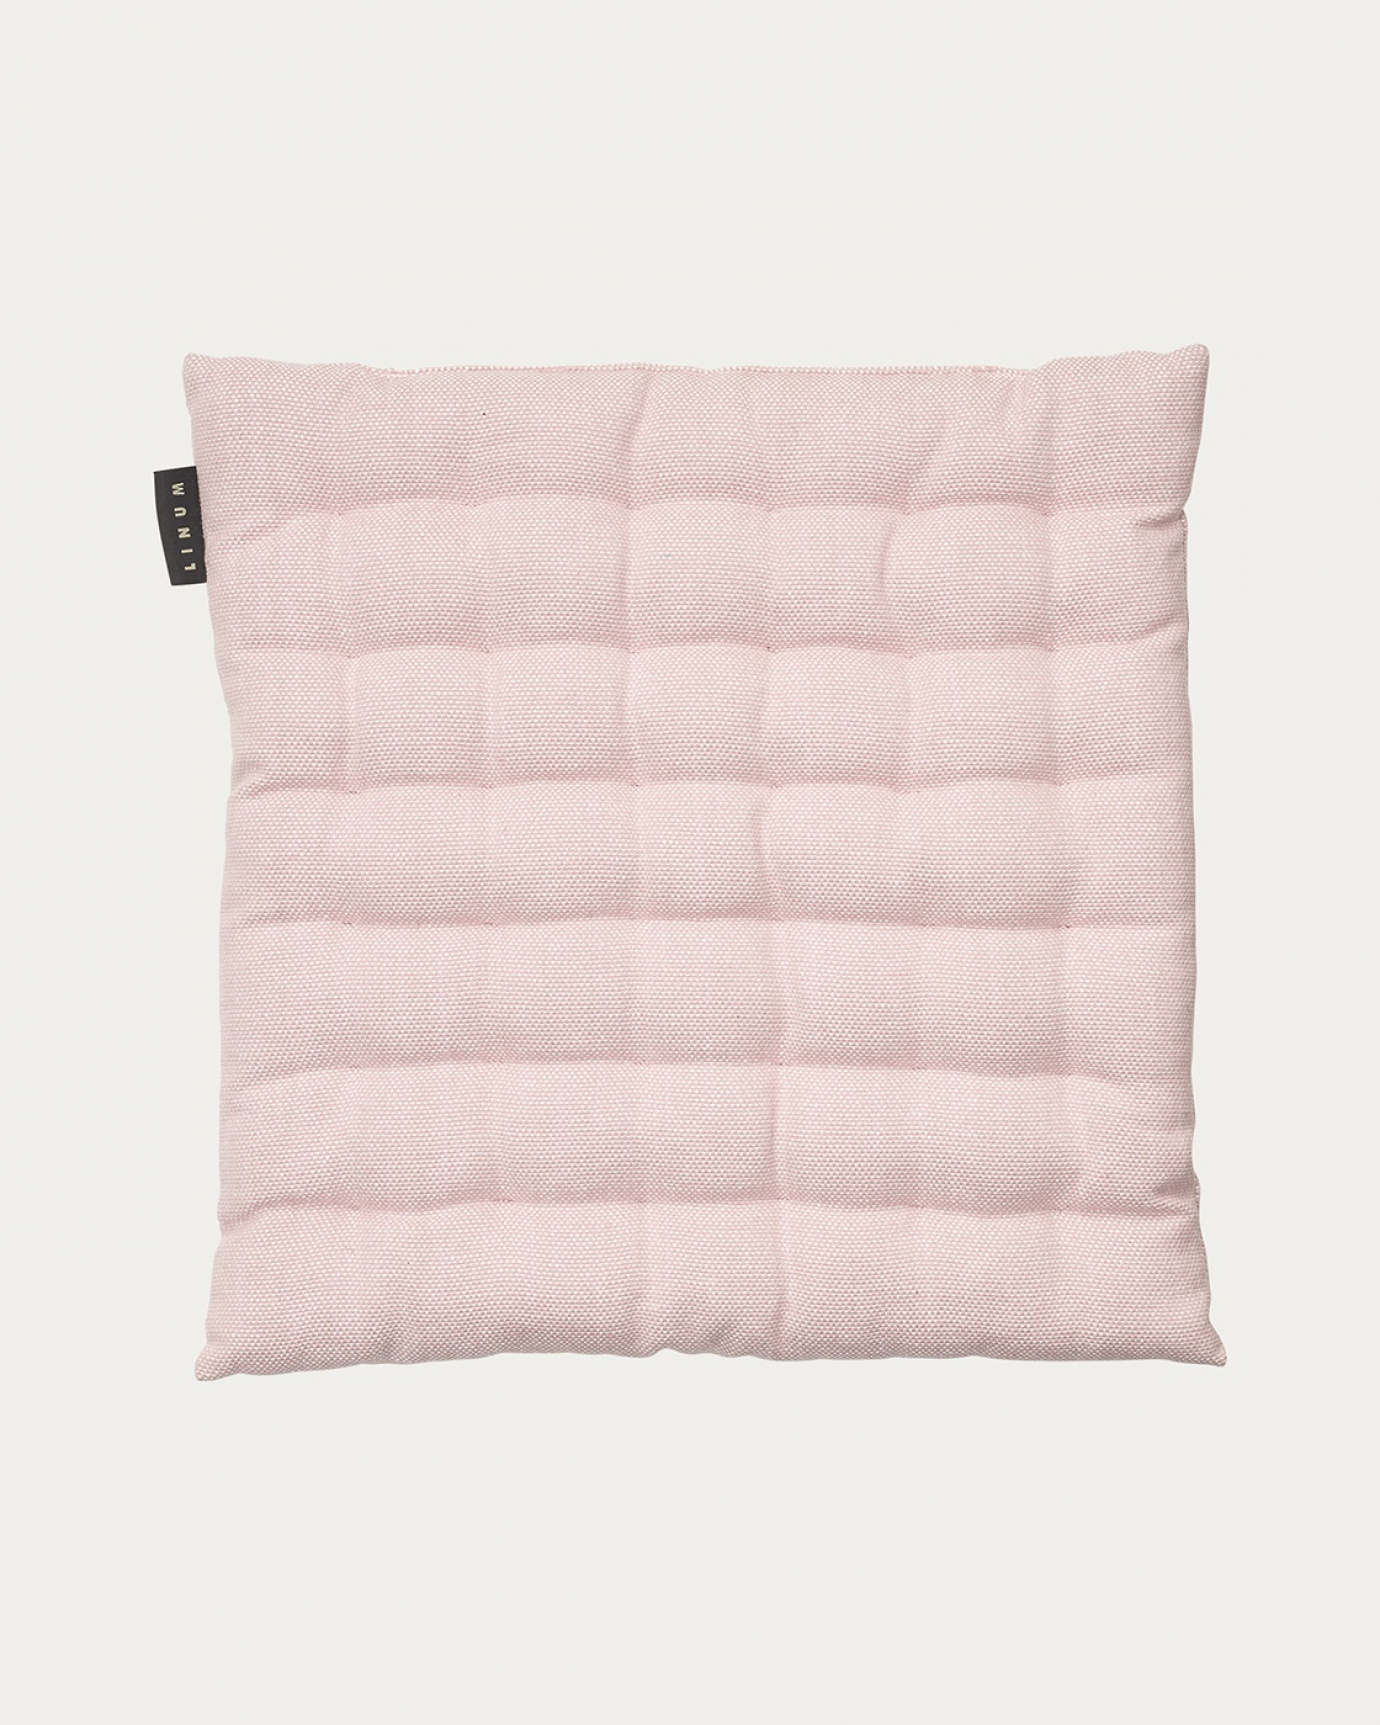 Immagine prodotto rosa antico PEPPER cuscini sedie di cotone con imbottitura in poliestere di LINUM DESIGN. Dimensioni 40x40 cm.